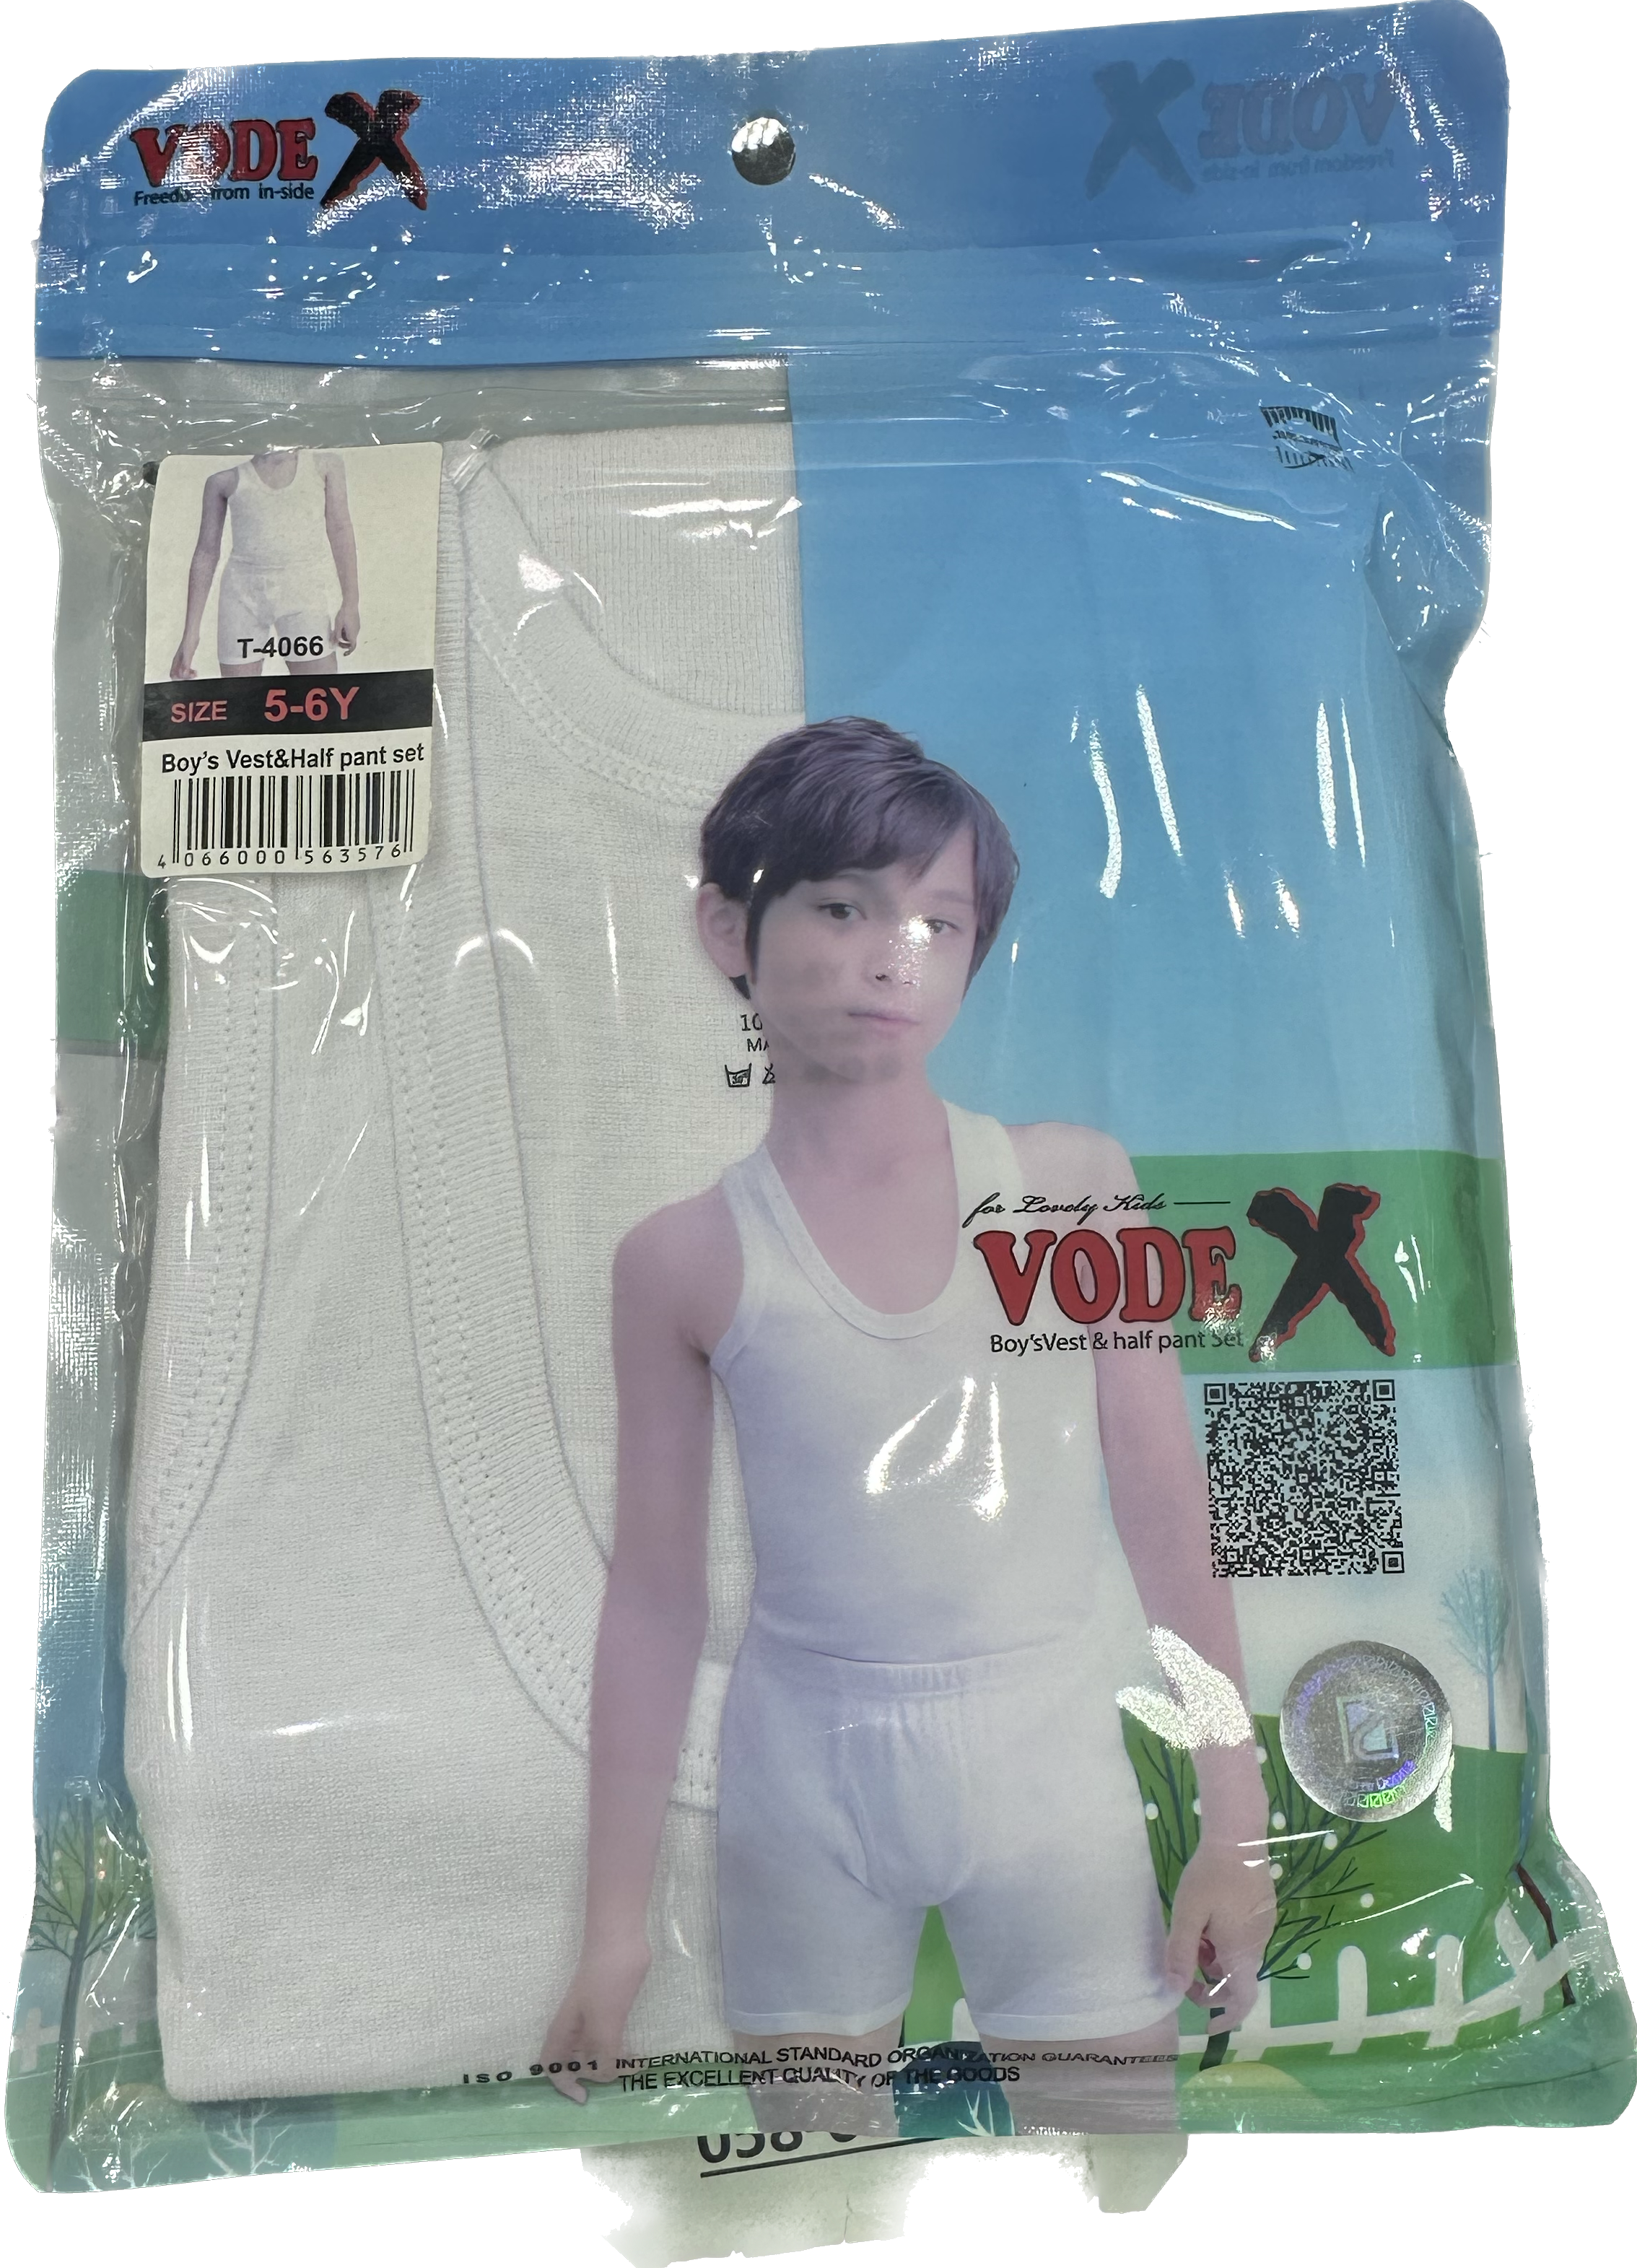 VODEX Boys Vest and Half Pant Set ~Underwear white wholesale 12 pcs - carton